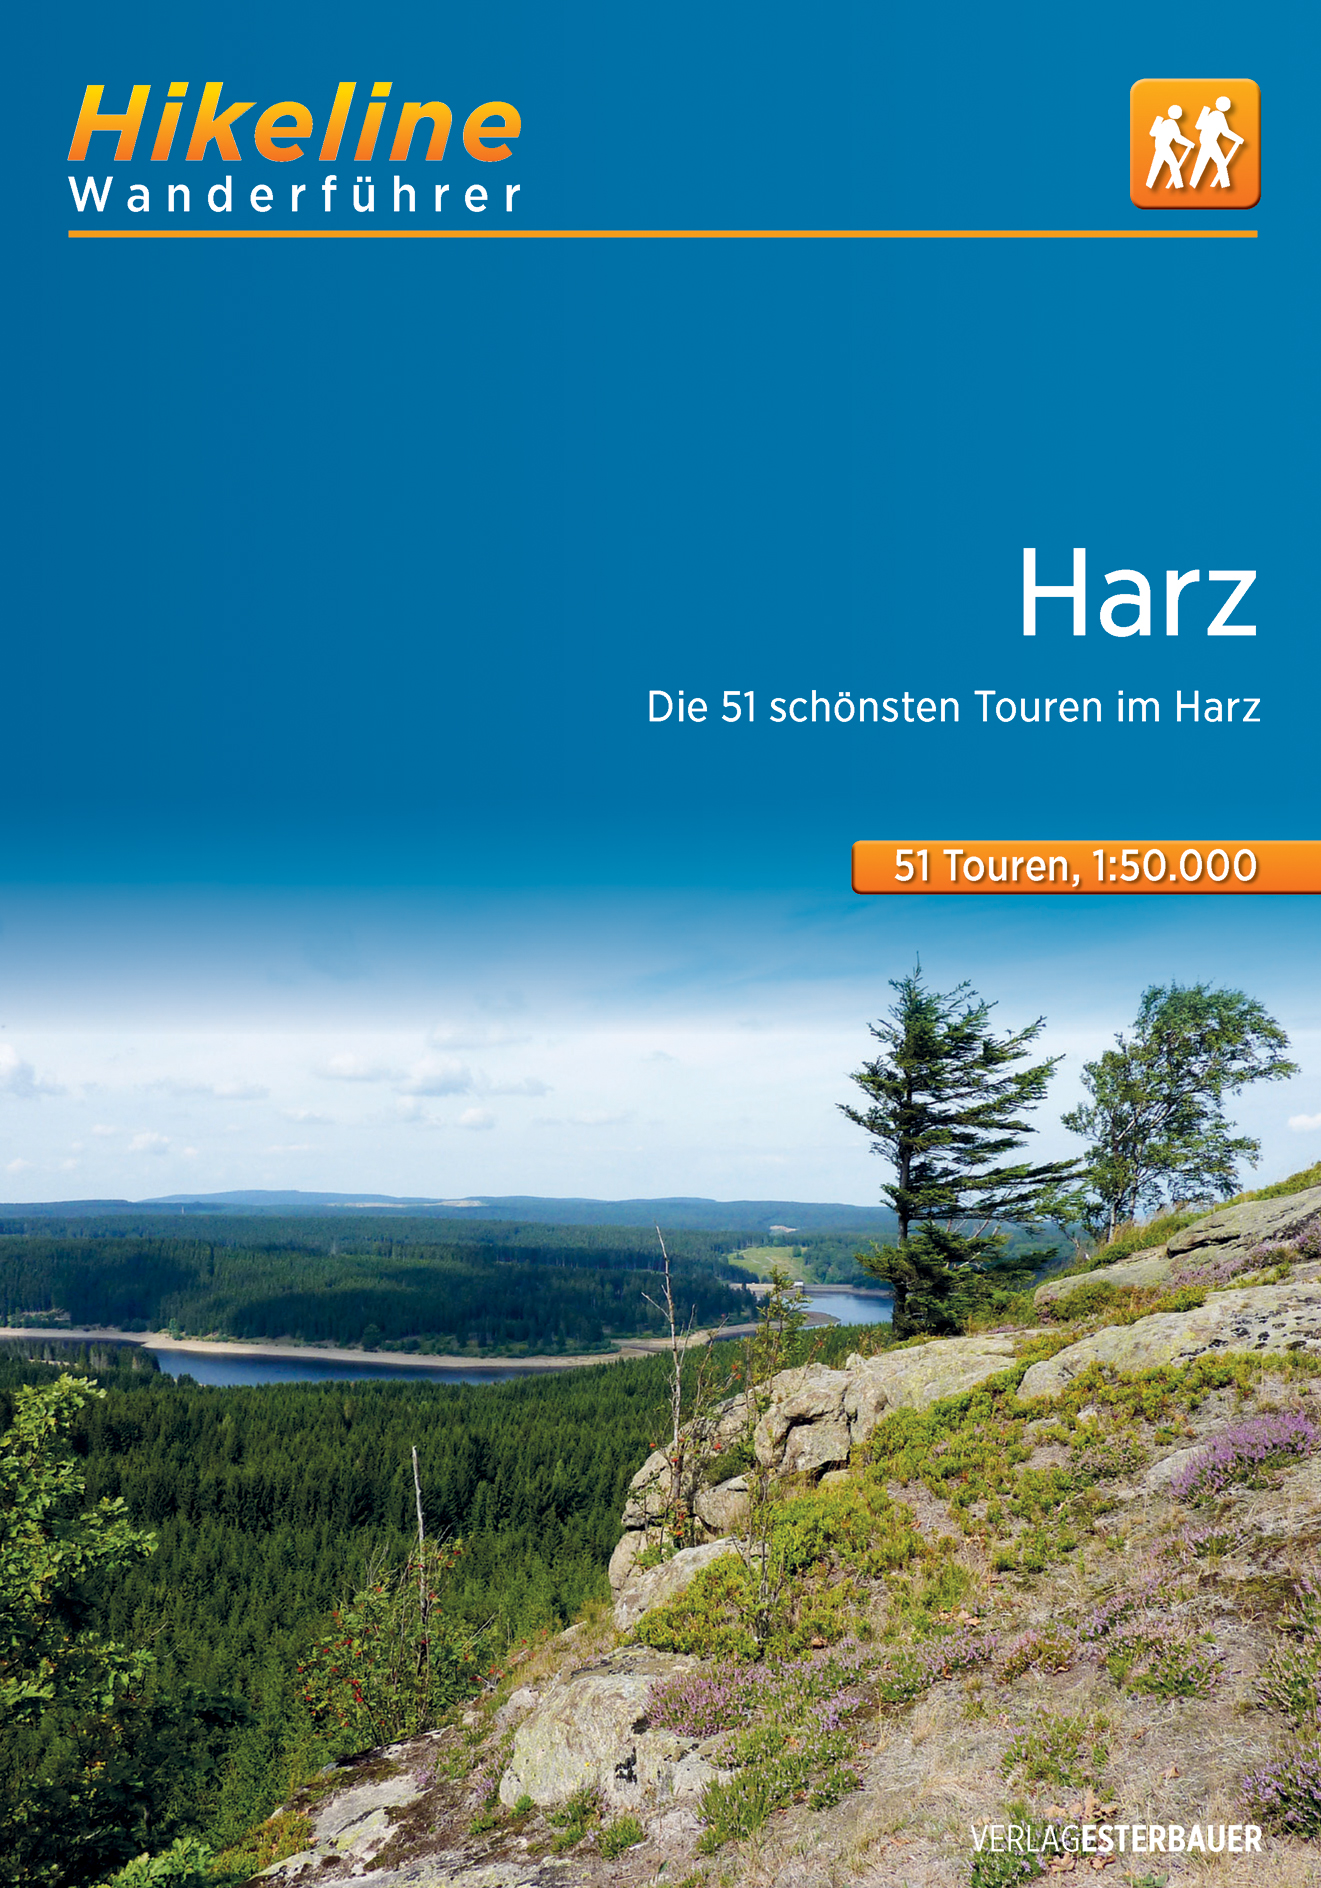 Online bestellen: Wandelgids Hikeline Harz | Esterbauer